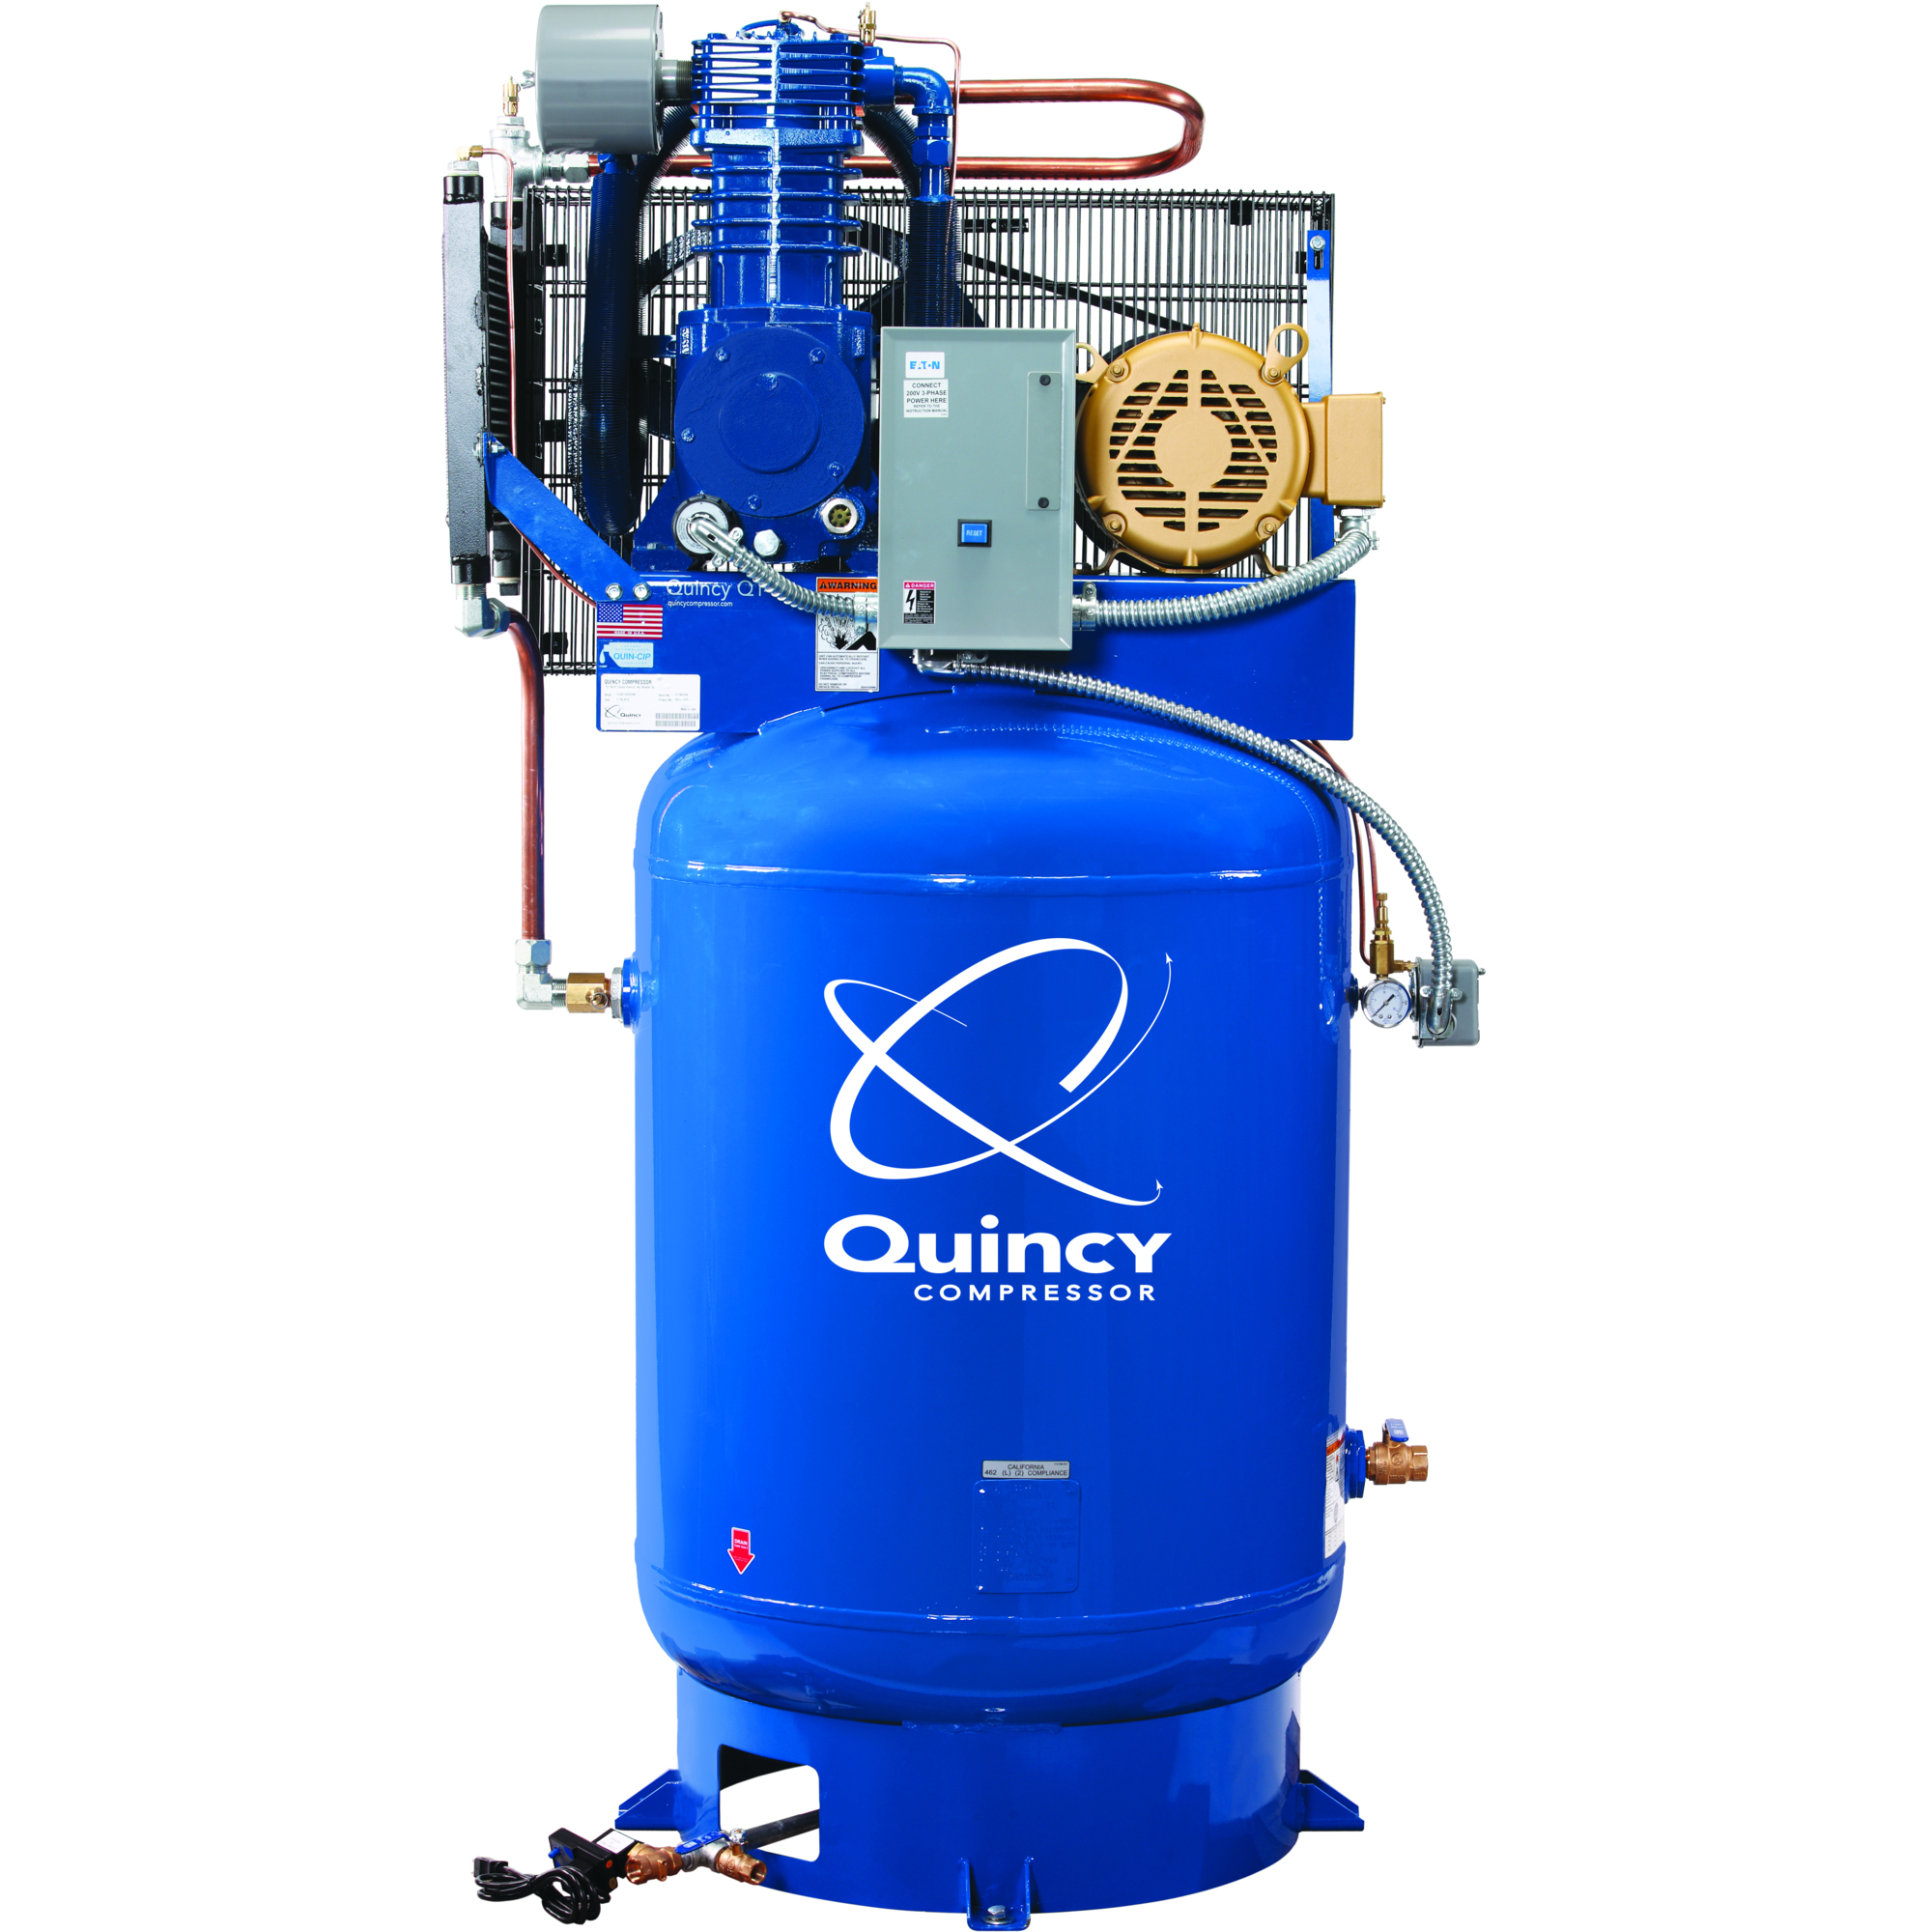 Quincy Compressor 2020040785